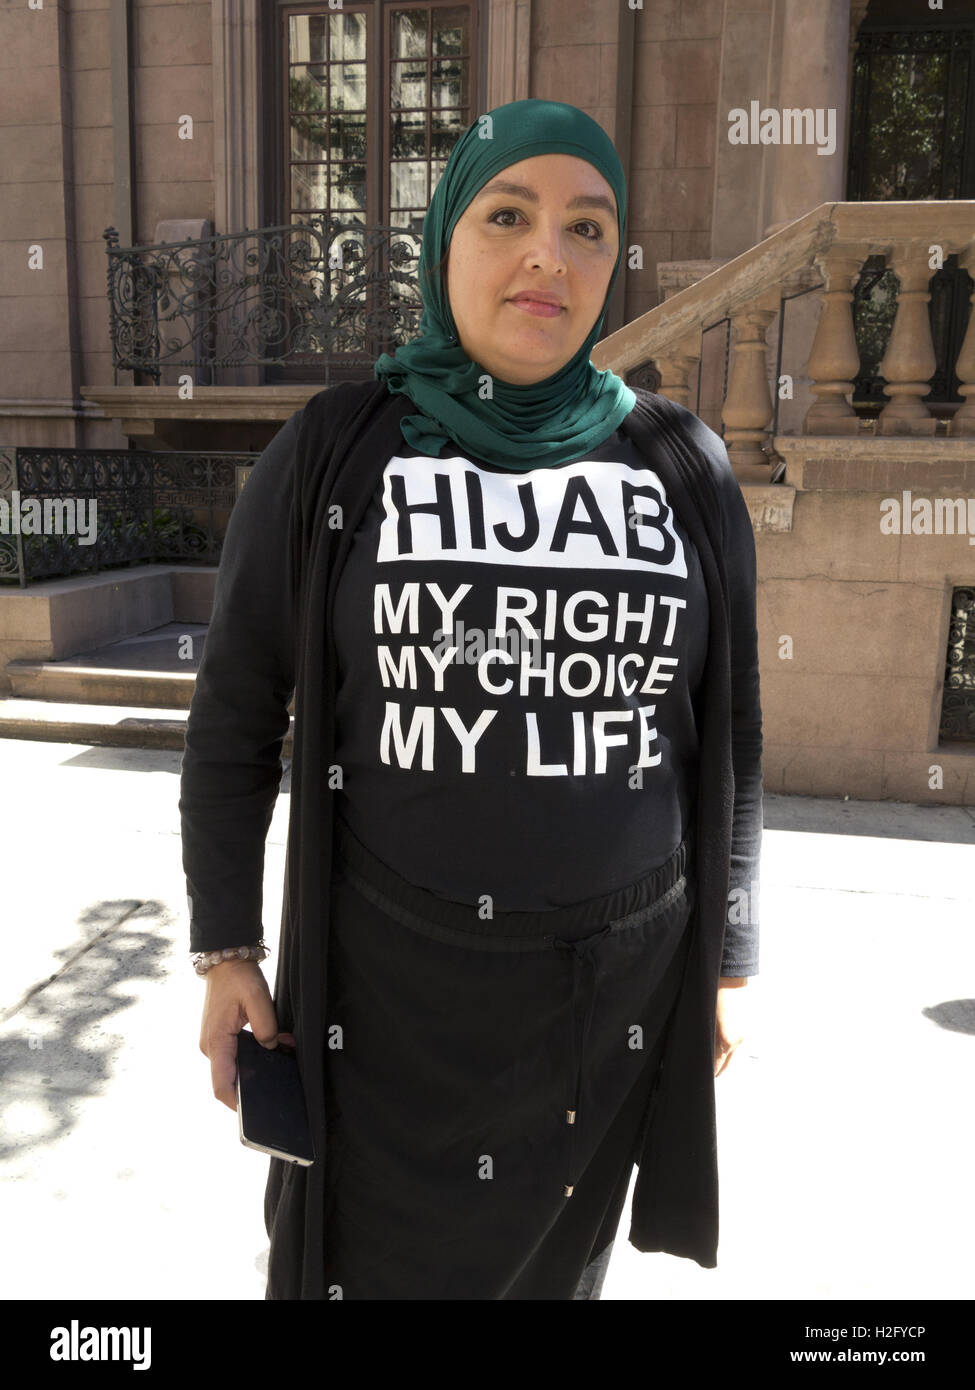 Muslimische Frau trägt Nachricht-t-Shirt im amerikanischen muslimischen Day  Parade in New York City 2016 Stockfotografie - Alamy